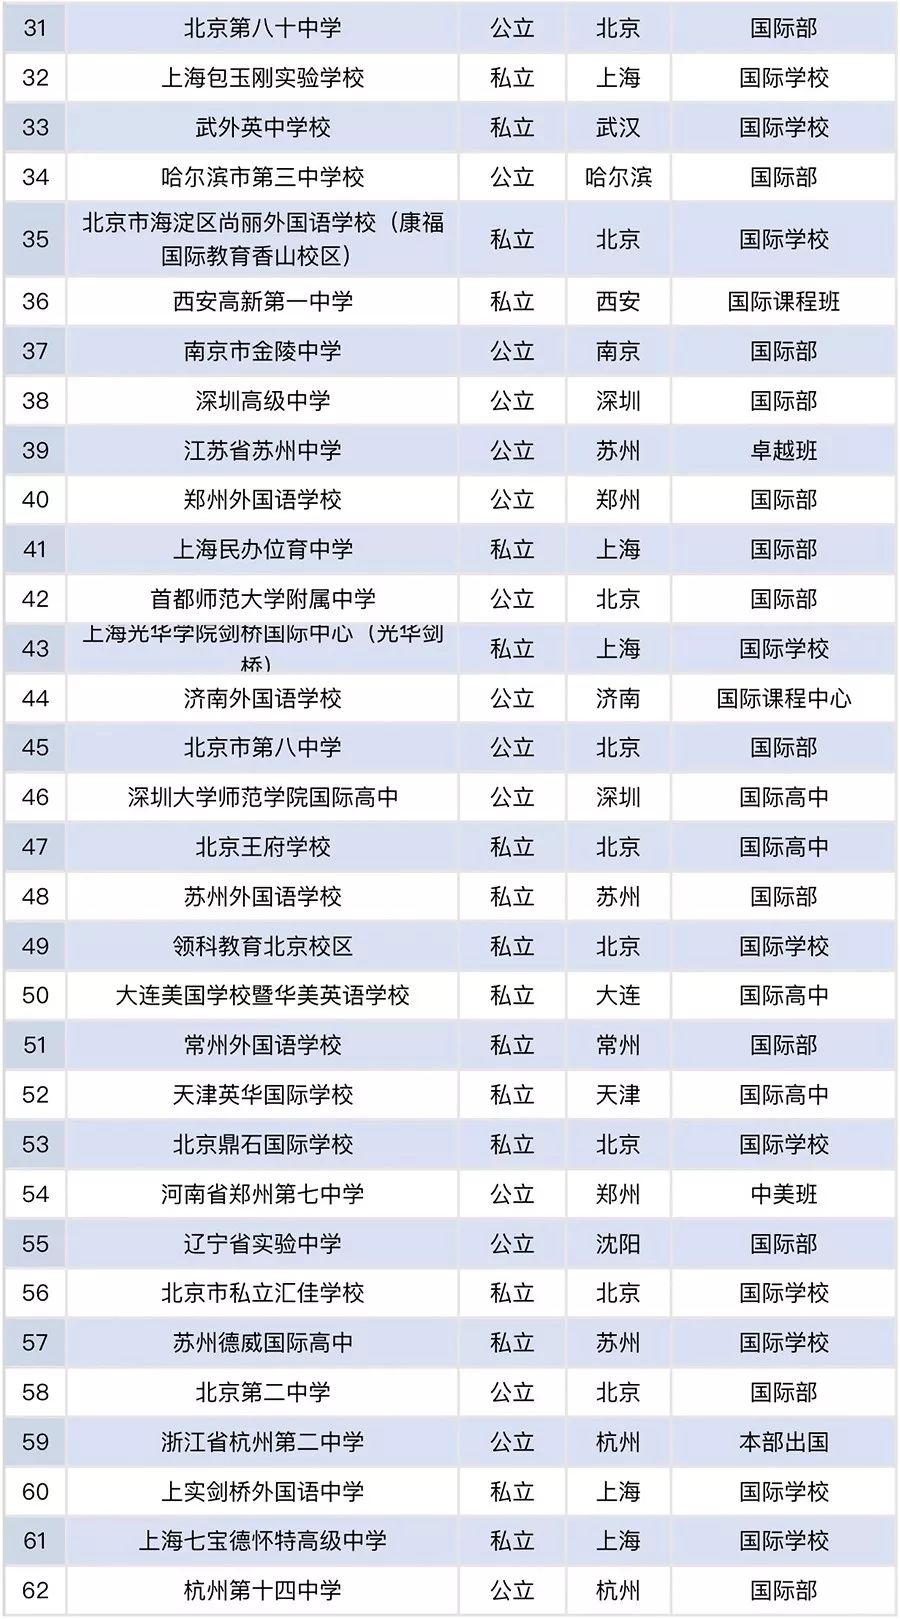 《2018年度中国大陆出国留学最强中学TOP100榜》